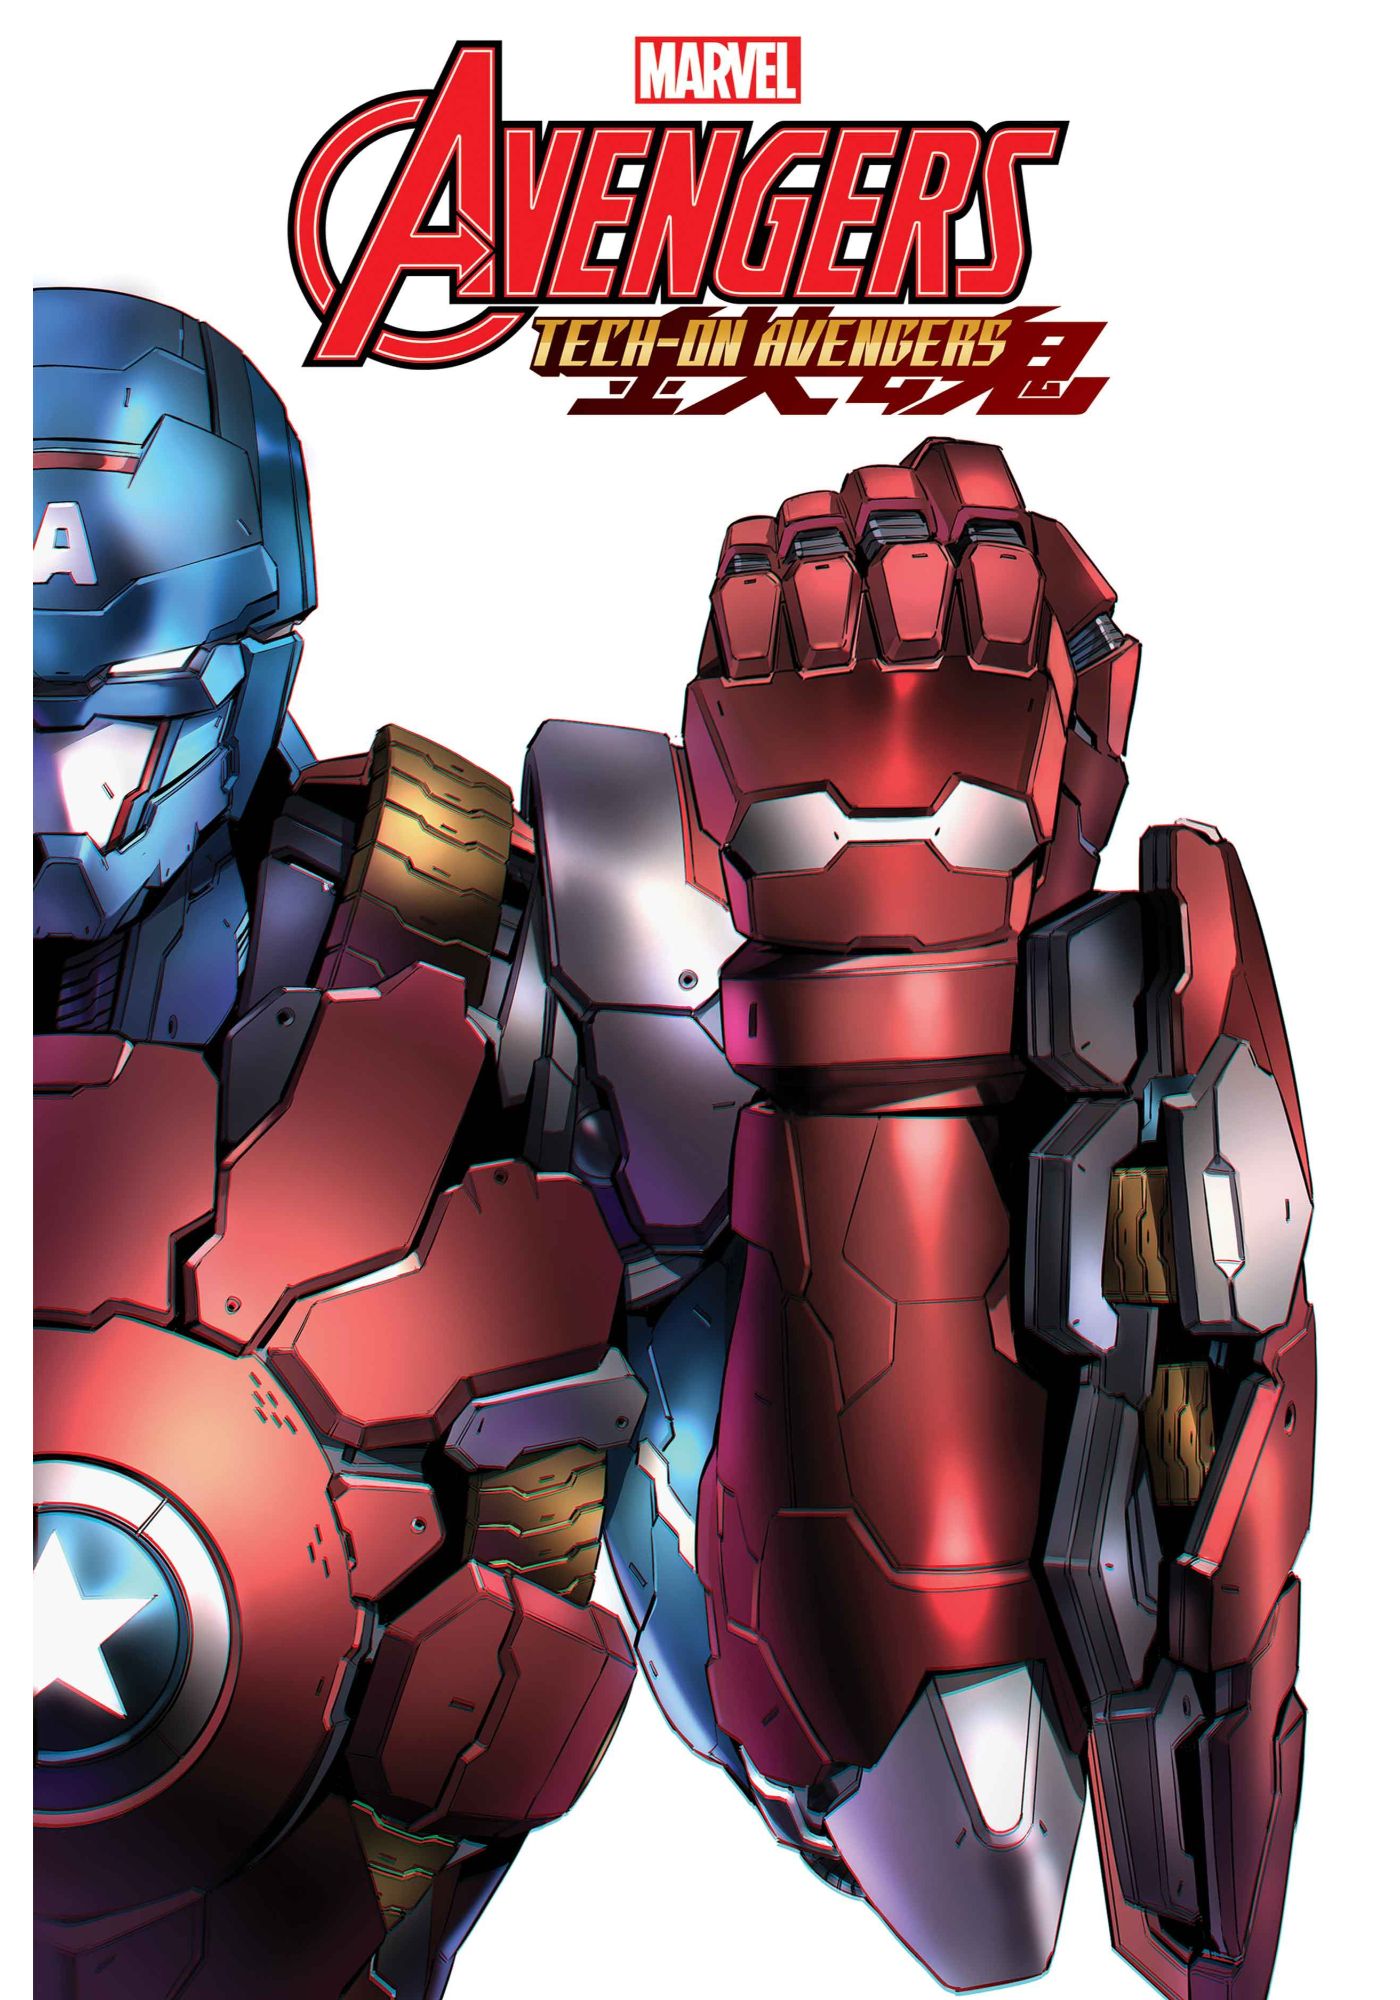 Captain America’s New Iron Man Armor Officially Debuts